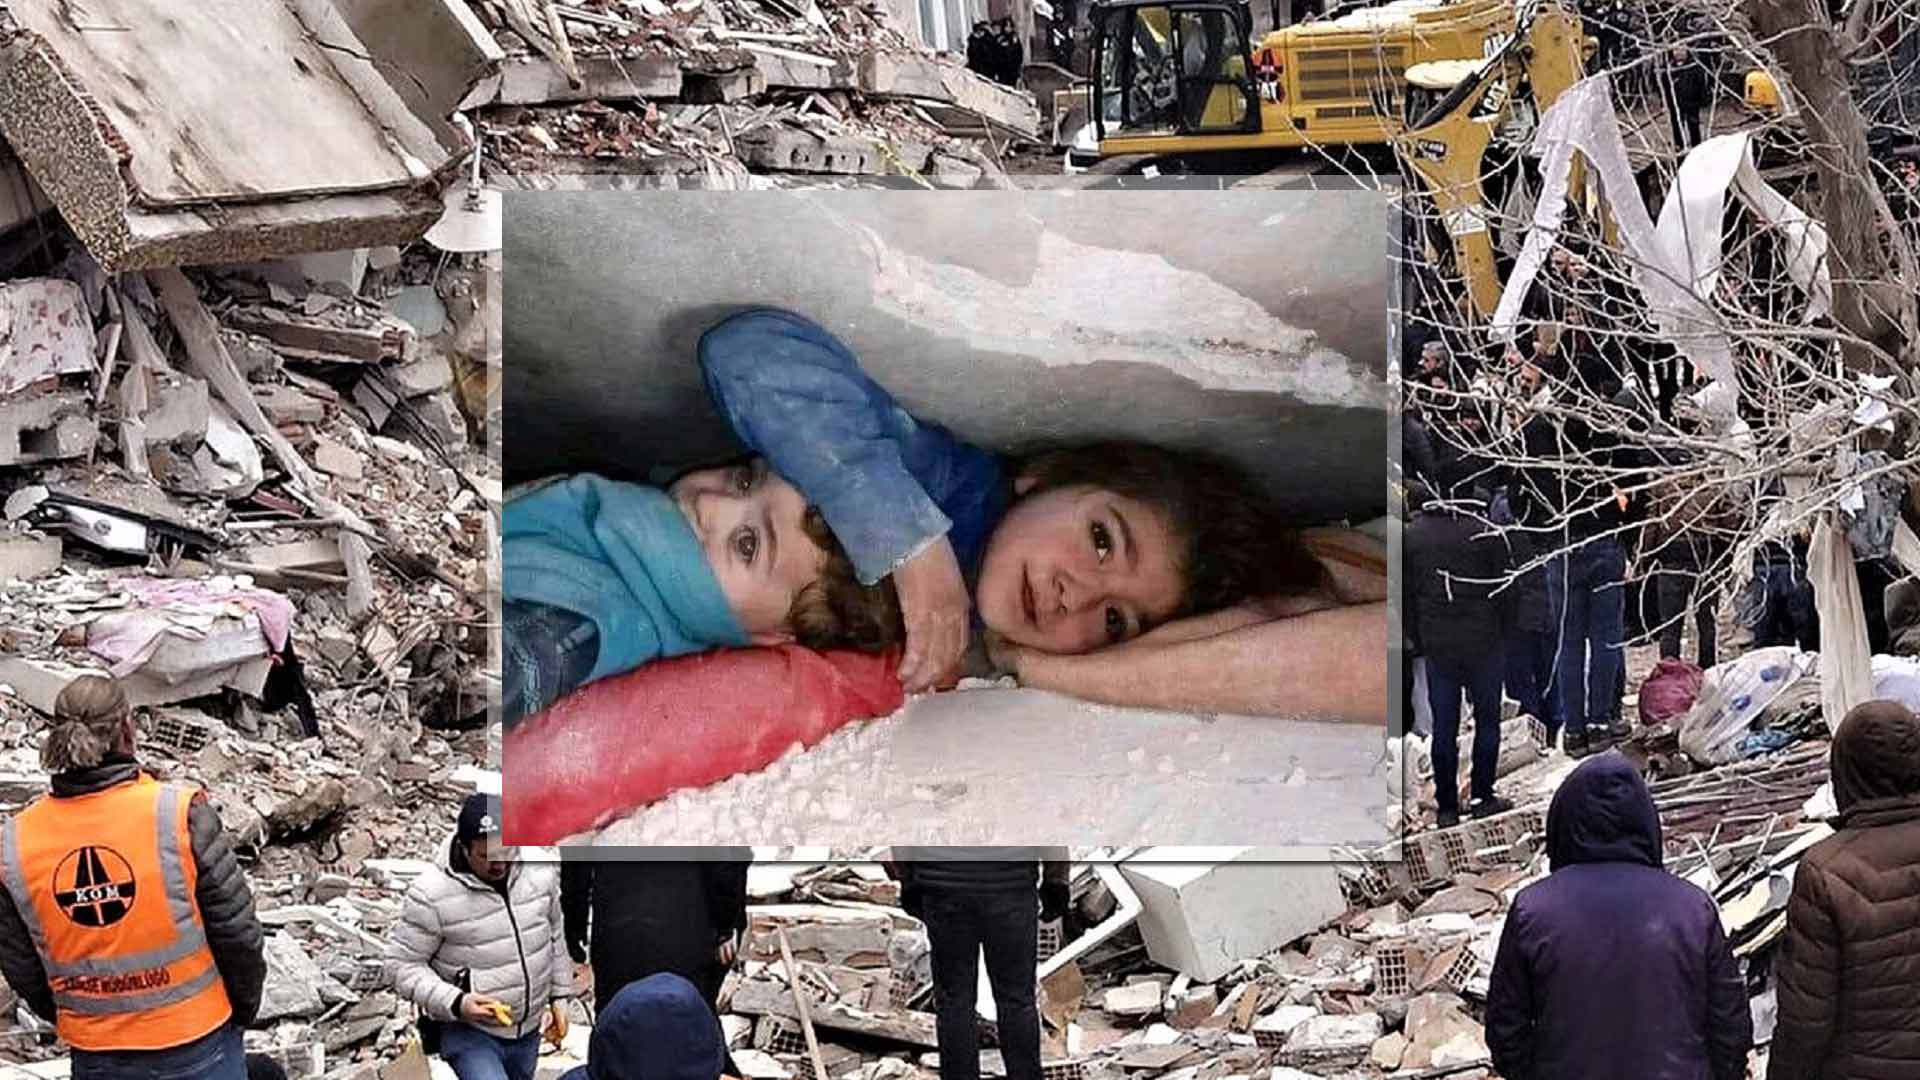 Σεισμός - Συρία: Εικόνα-«γροθιά» στο στομάχι - 7χρονη προστάτευε τον μικρό της αδερφό κάτω από τα χαλάσματα